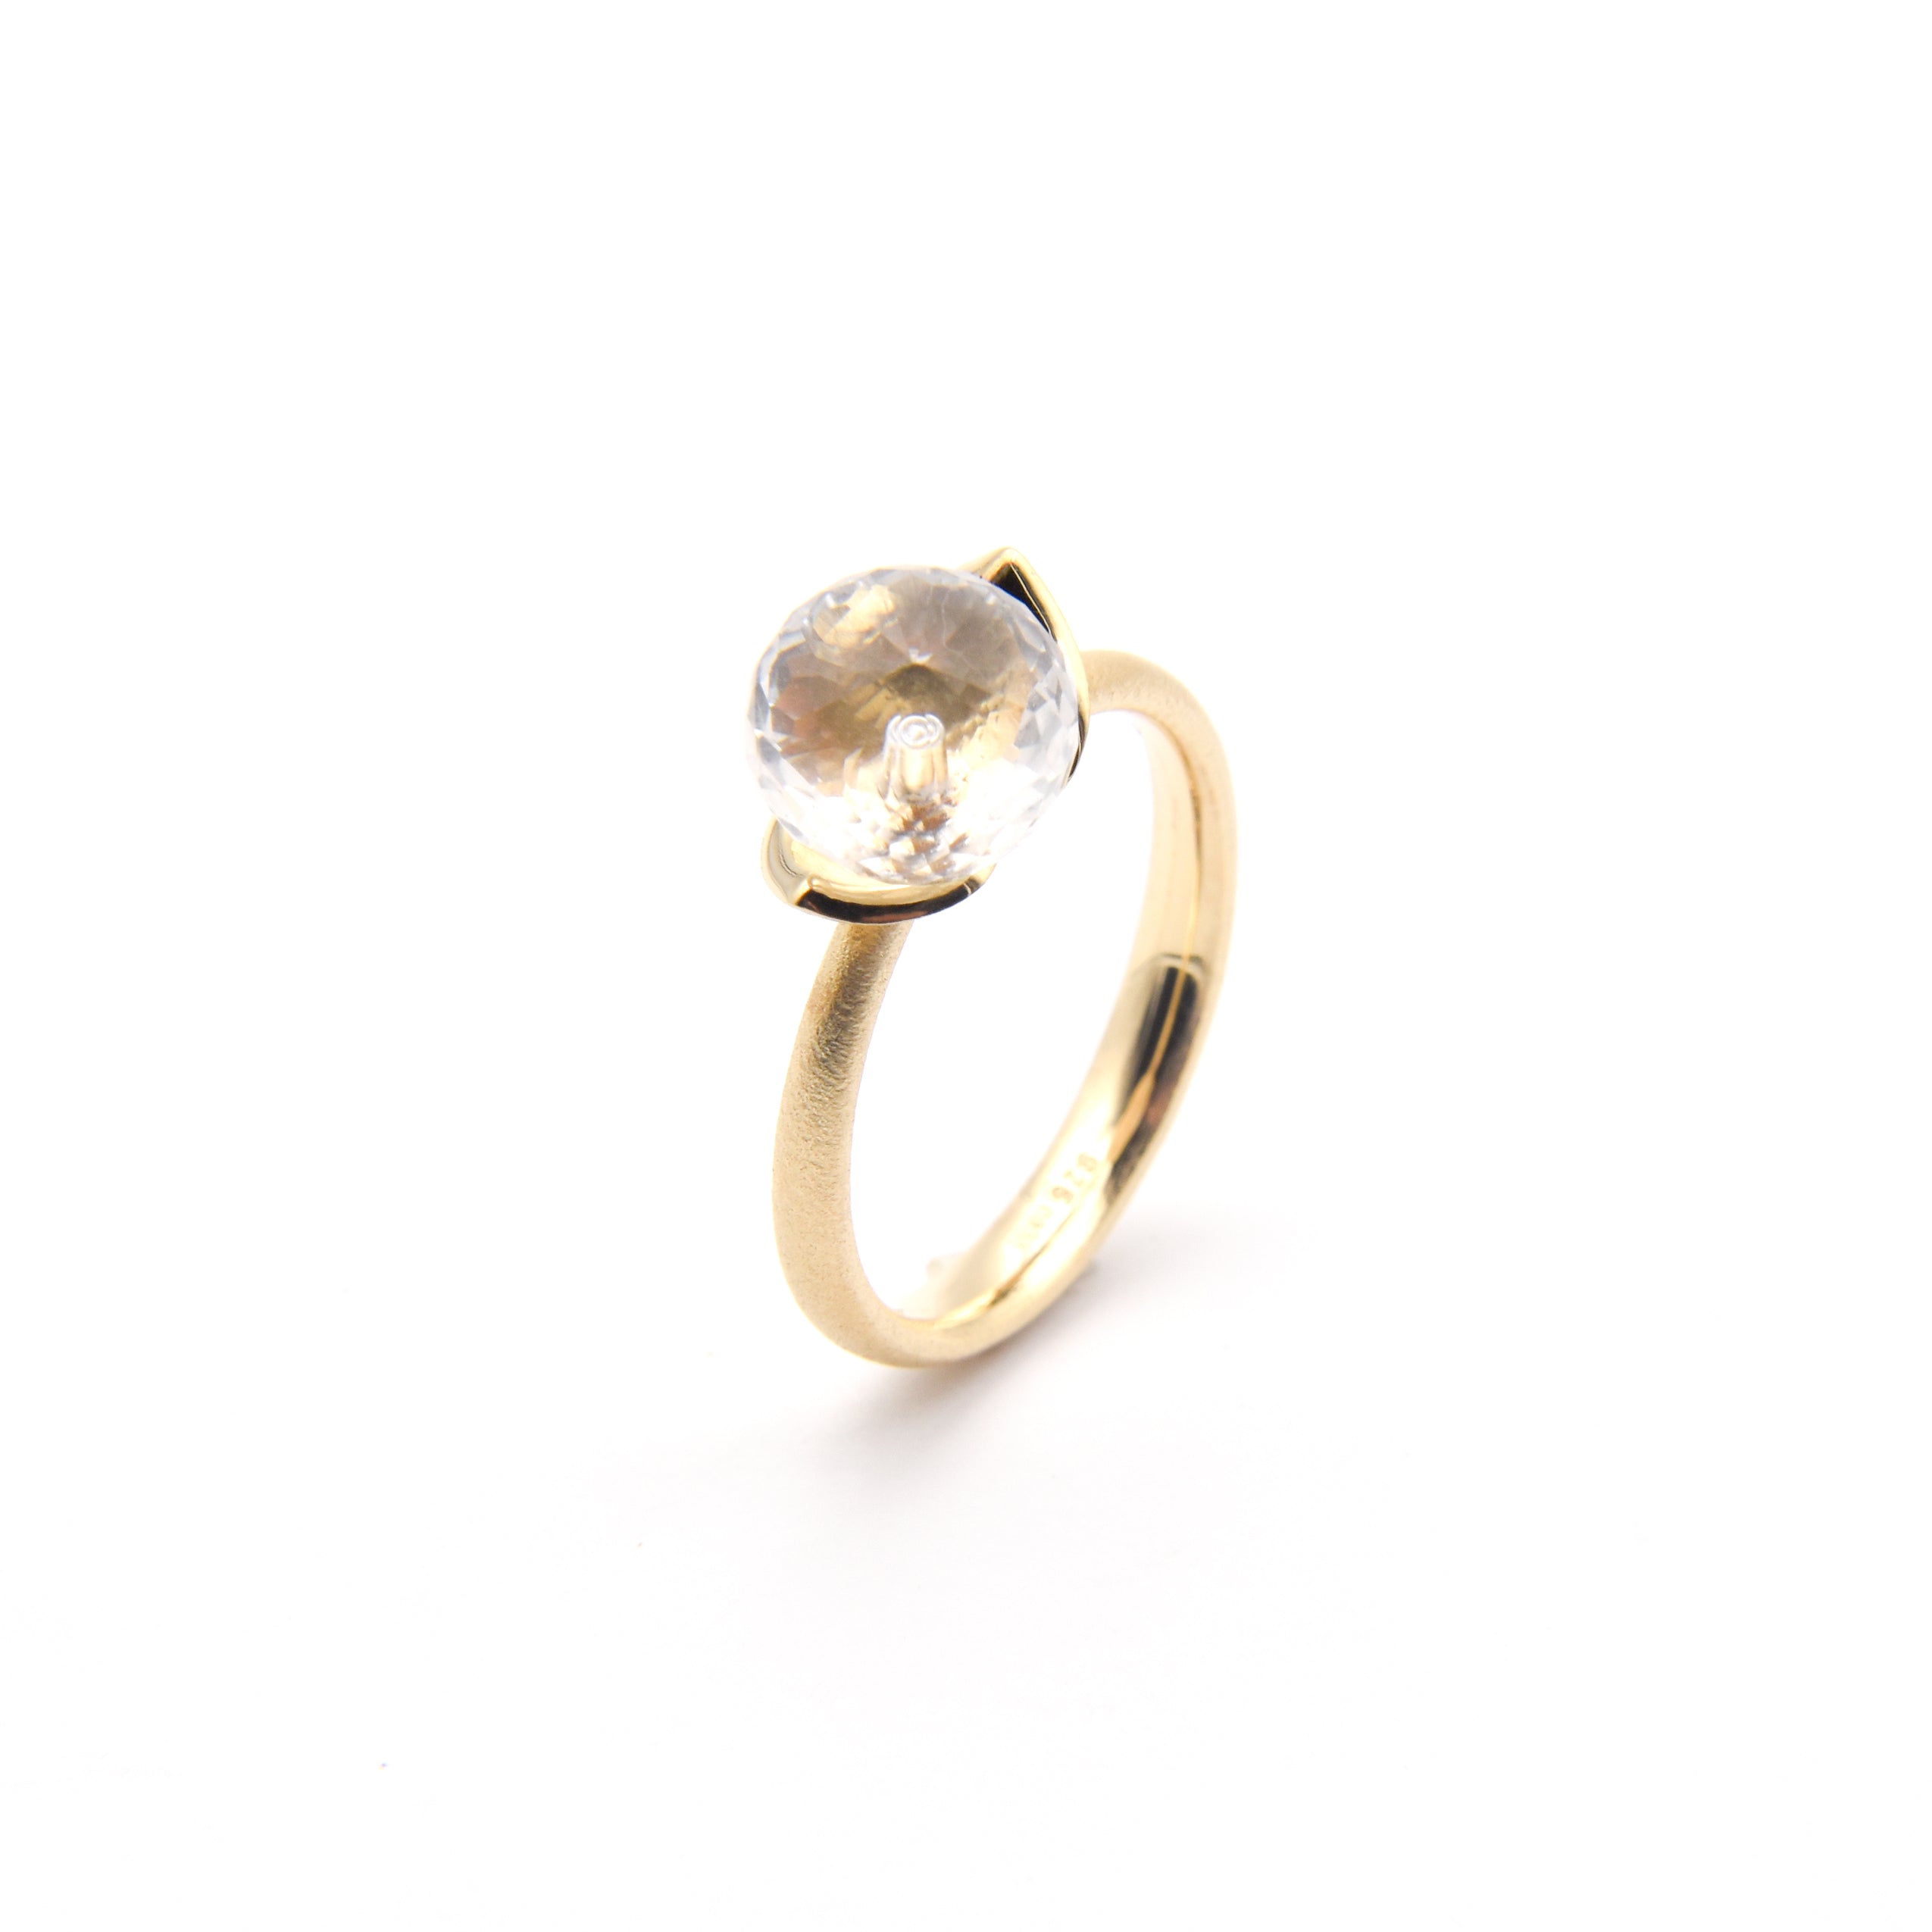 Dolce ring "smal" med bergkristall 925/-